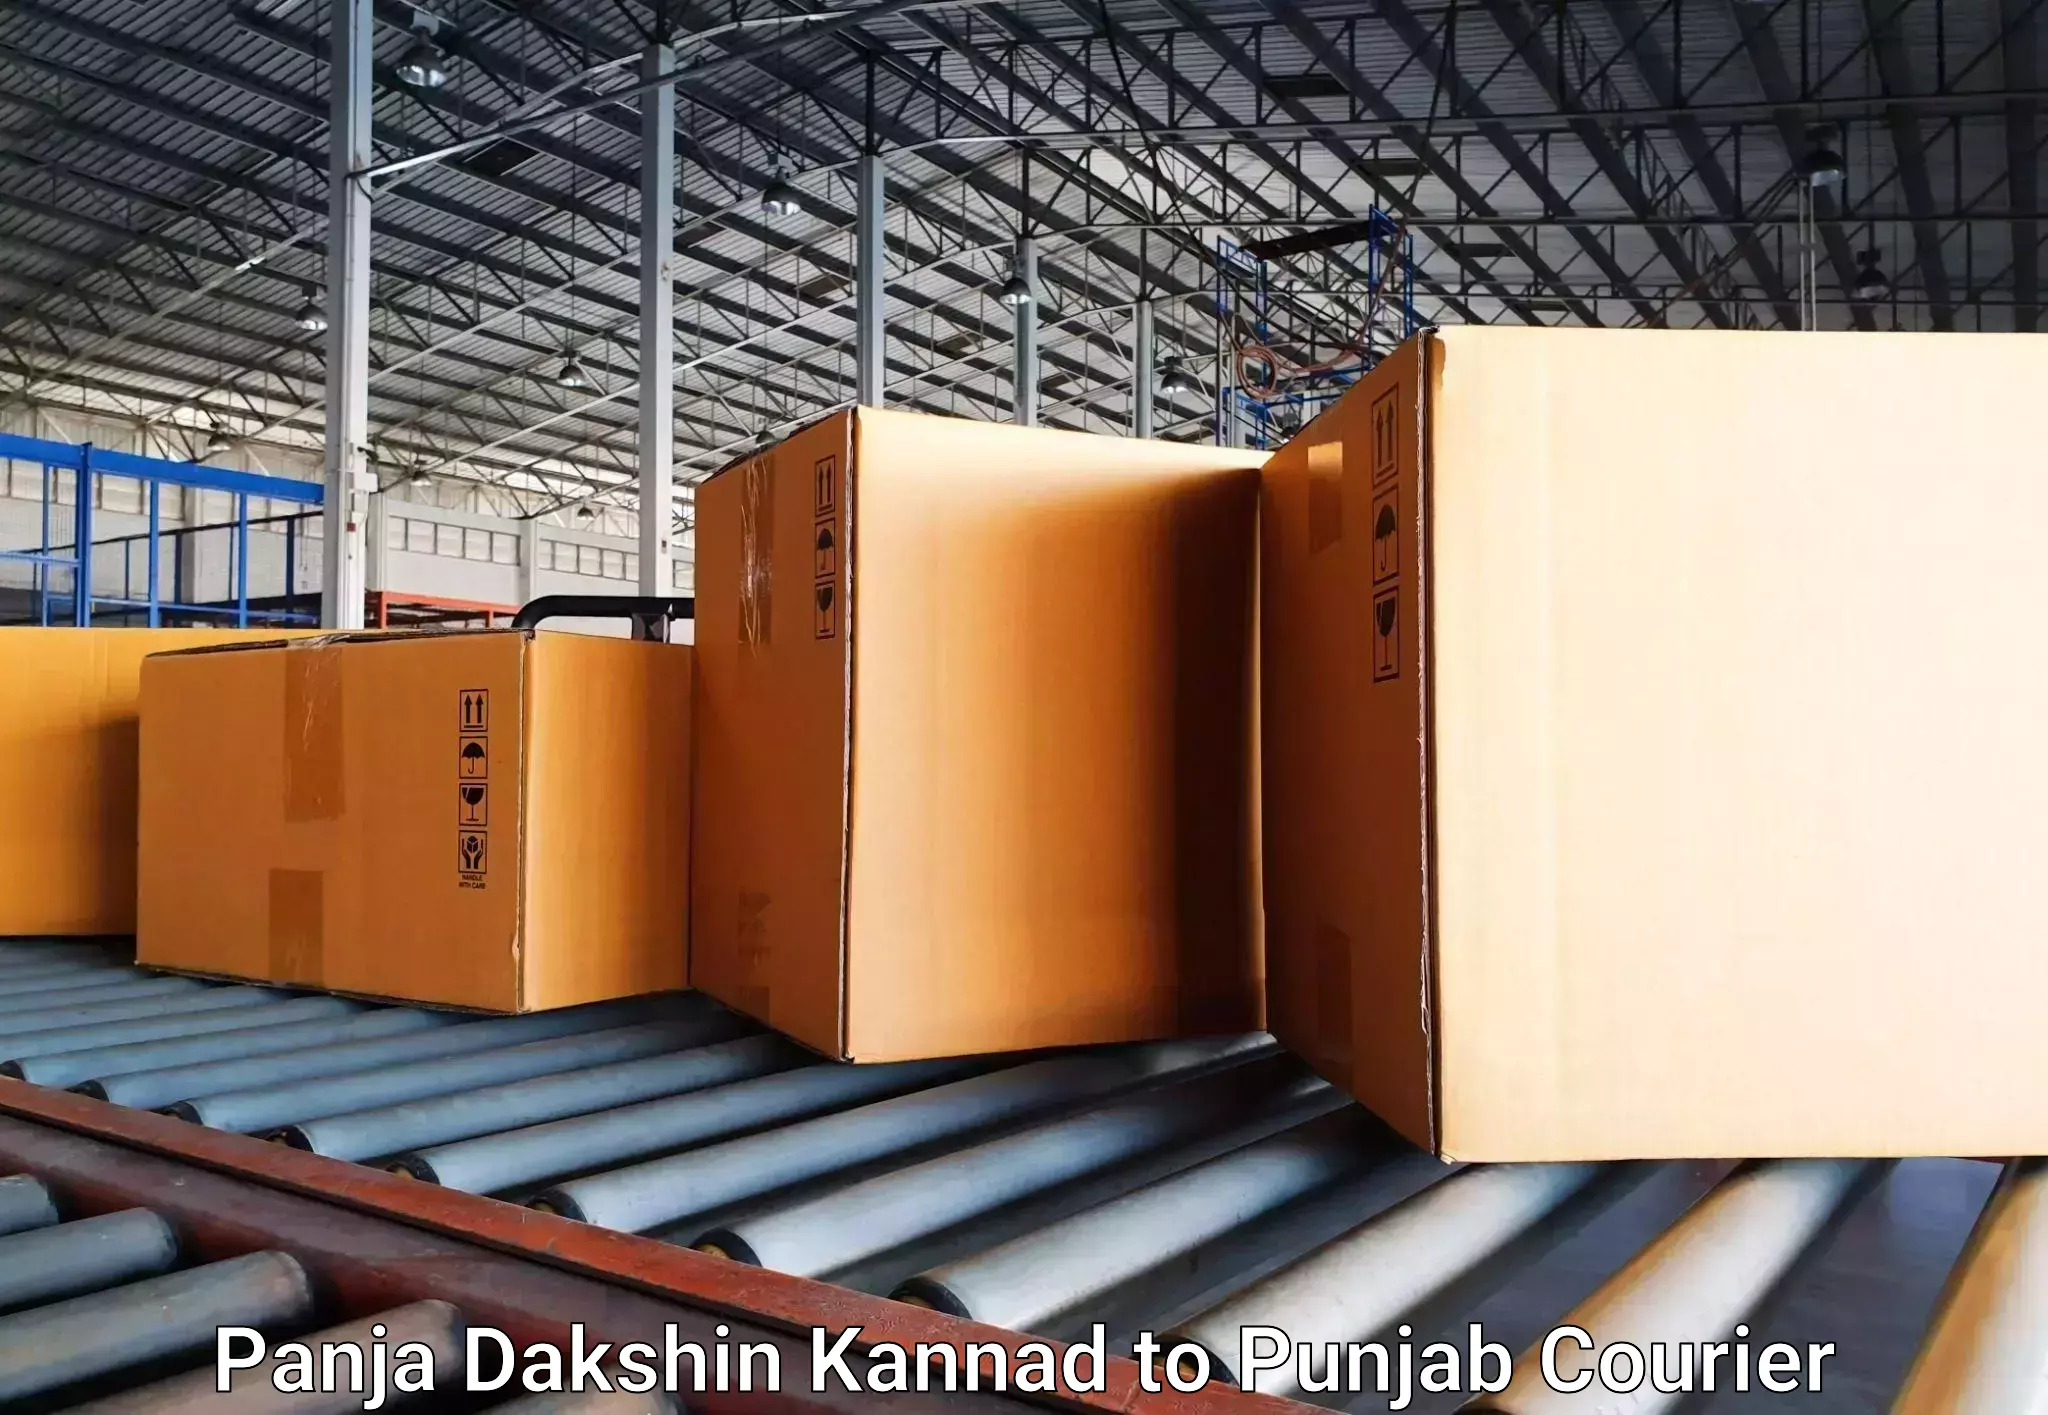 Baggage delivery scheduling Panja Dakshin Kannad to Punjab